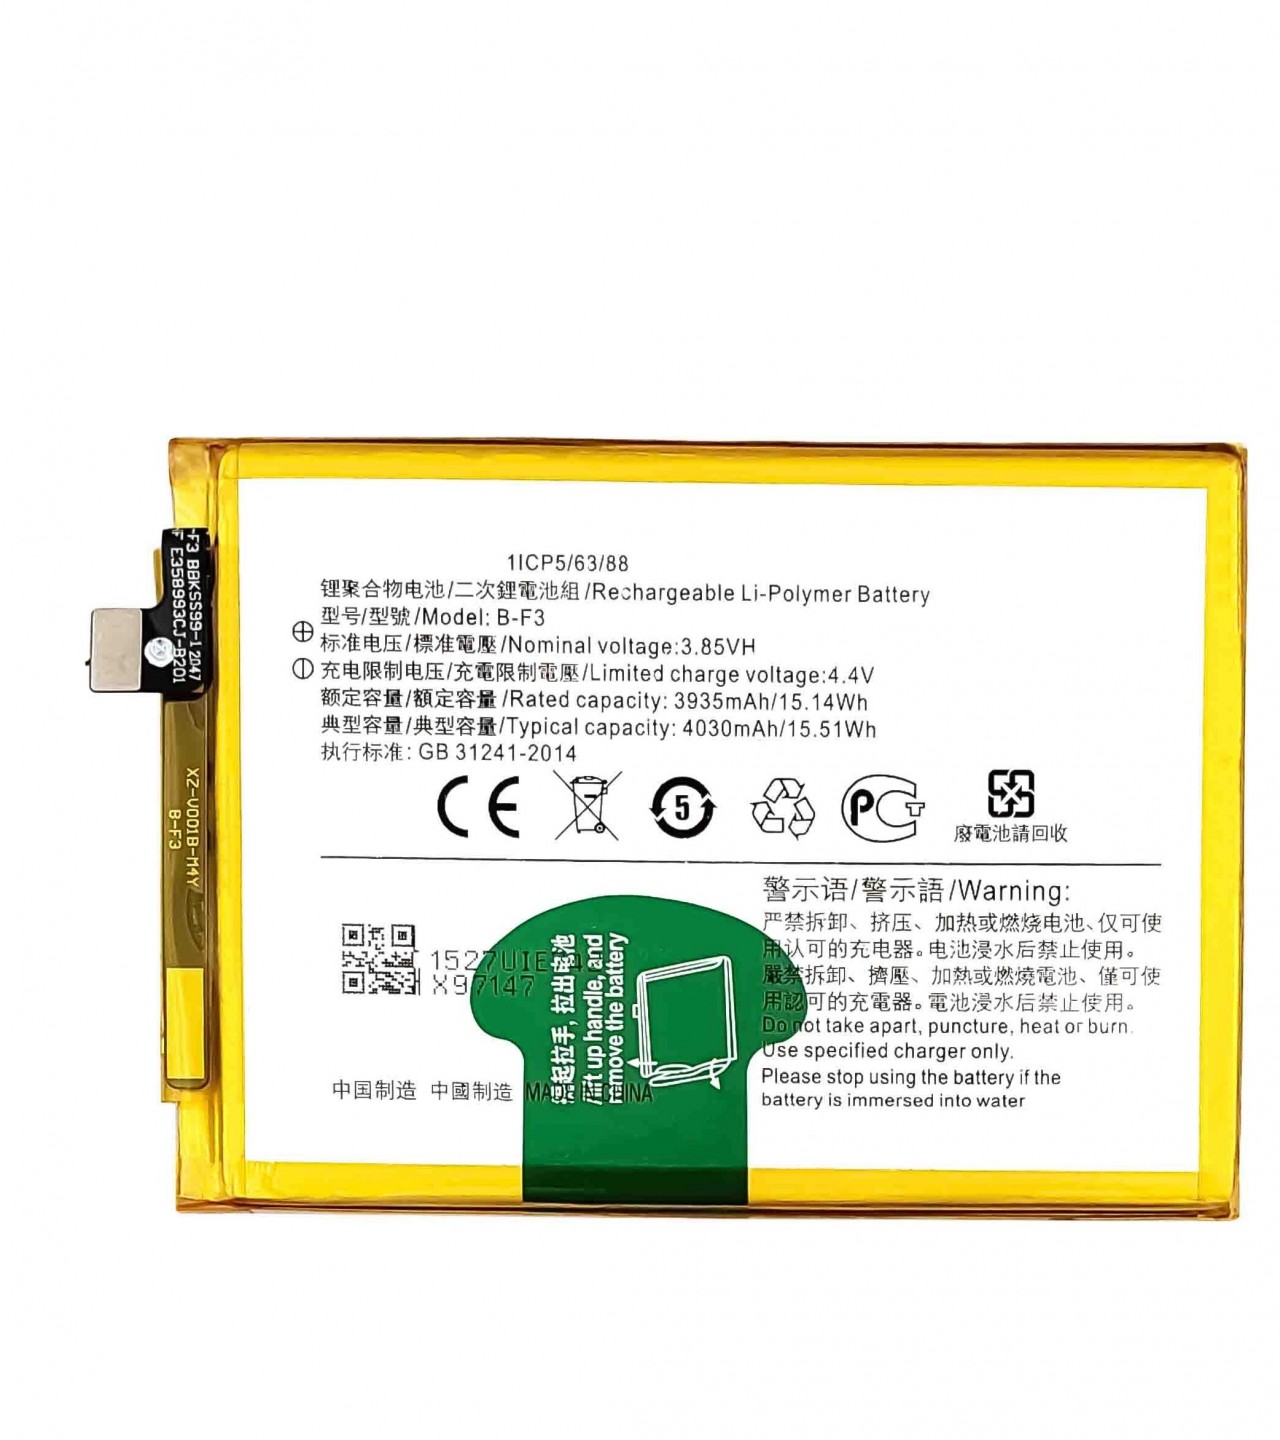 BF3 Battery For Vivo Y91 / Y91C / Y93 / Y95 Capacity-4030mAh Silver